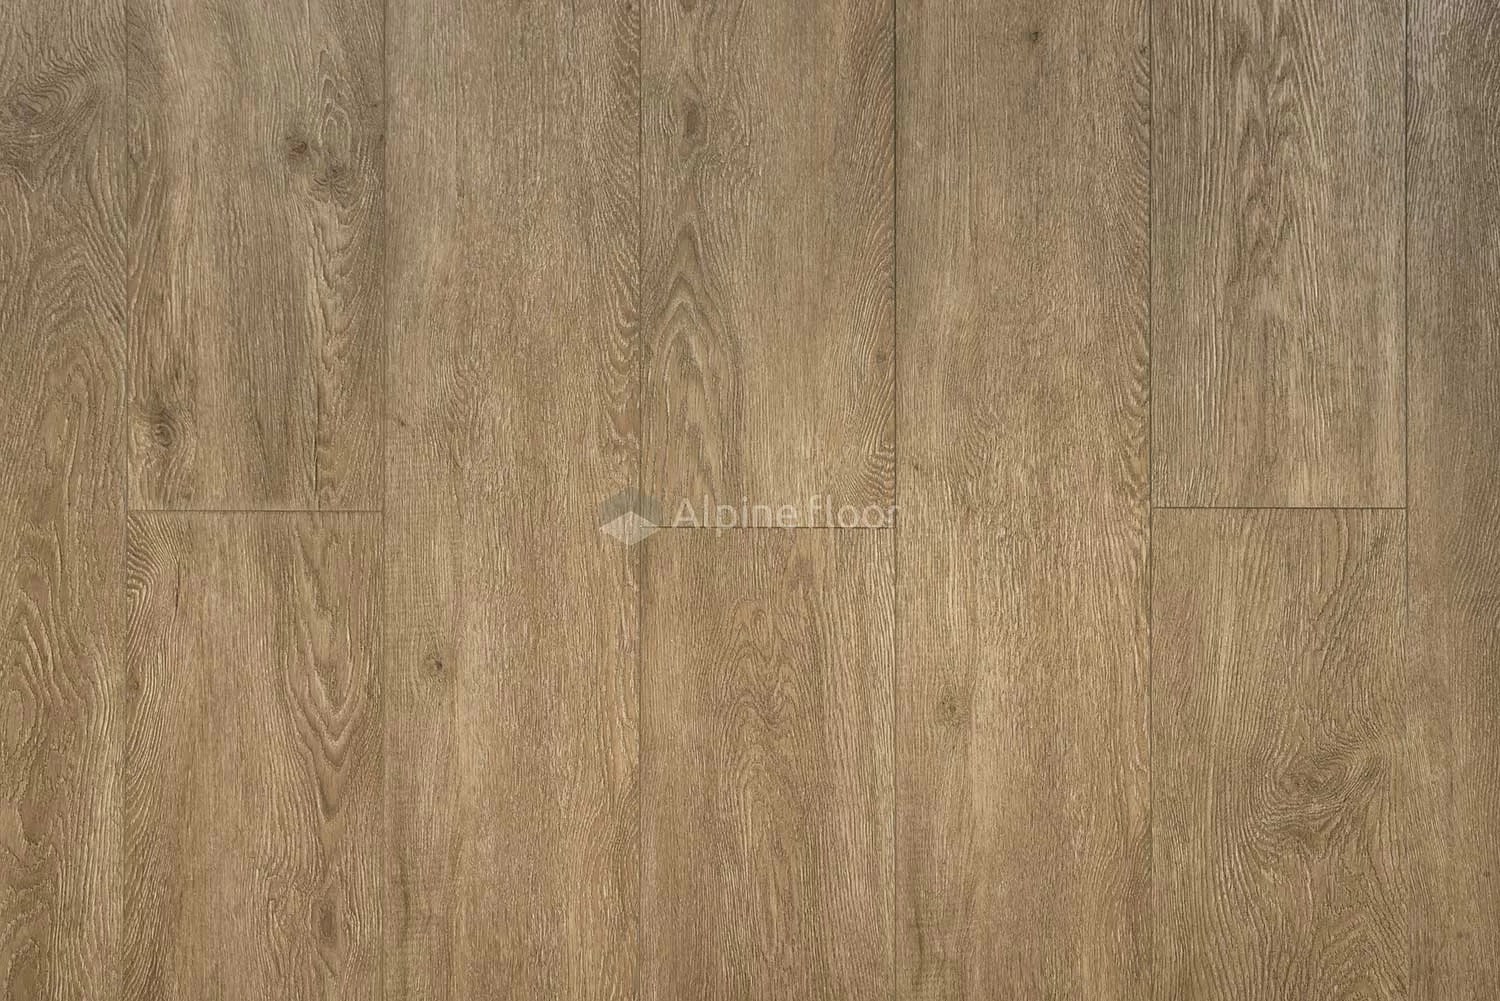 SPC ламинат Alpine Floor Grand Sequoia Superior ABA Макадамия 1220x183x8 мм, ECO 11-1003 ABA